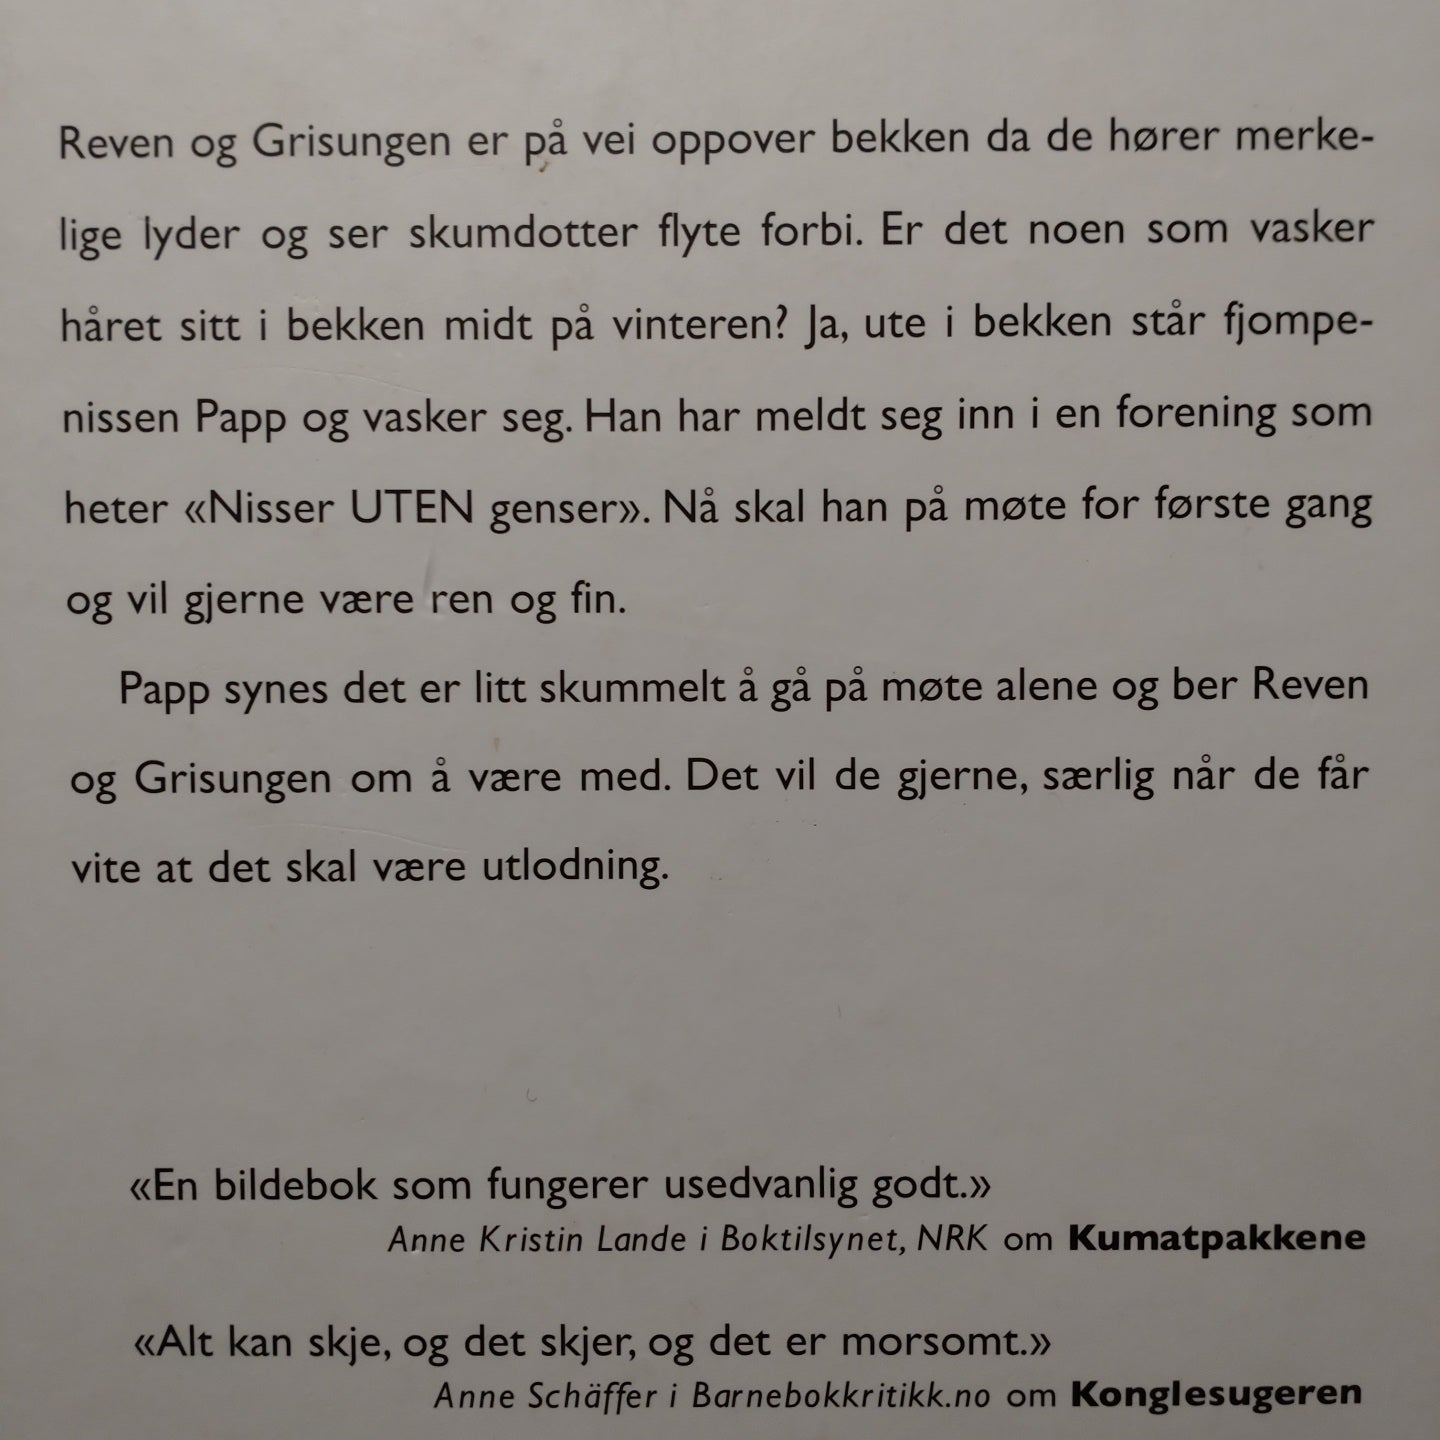 Rørvik, Bjørn F.: Reven og Grisungen 7 - Nisseforeningen